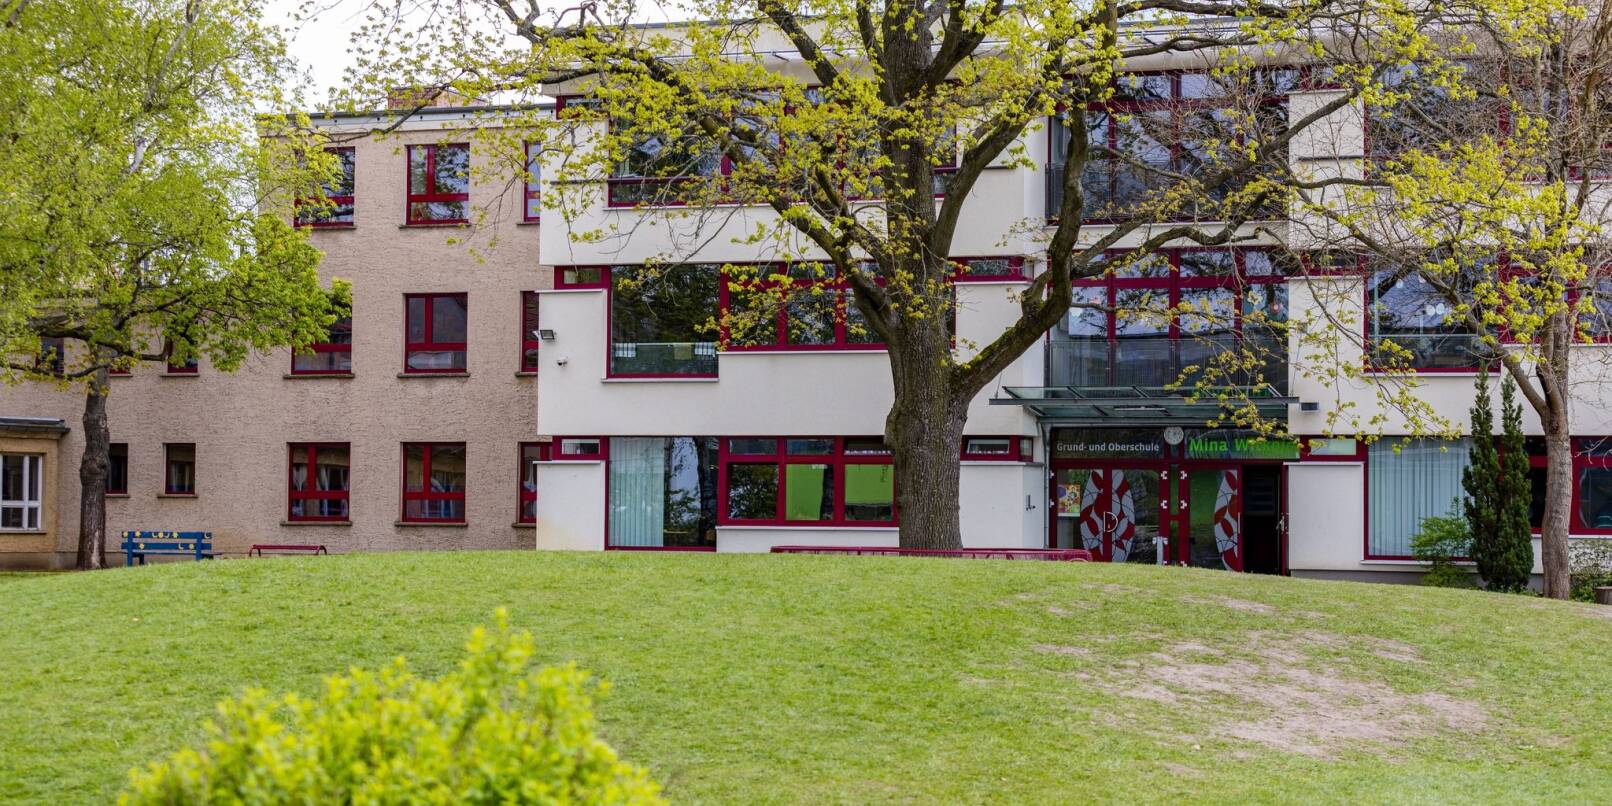 Die Grund- und Oberschule in Burg (Spreewald). Zwei Monate nach Bekanntwerden von rechtsextremen Vorfällen an einer Schule in Burg hat sich die Situation dort nach Angaben der Lehrkräfte nicht verändert.